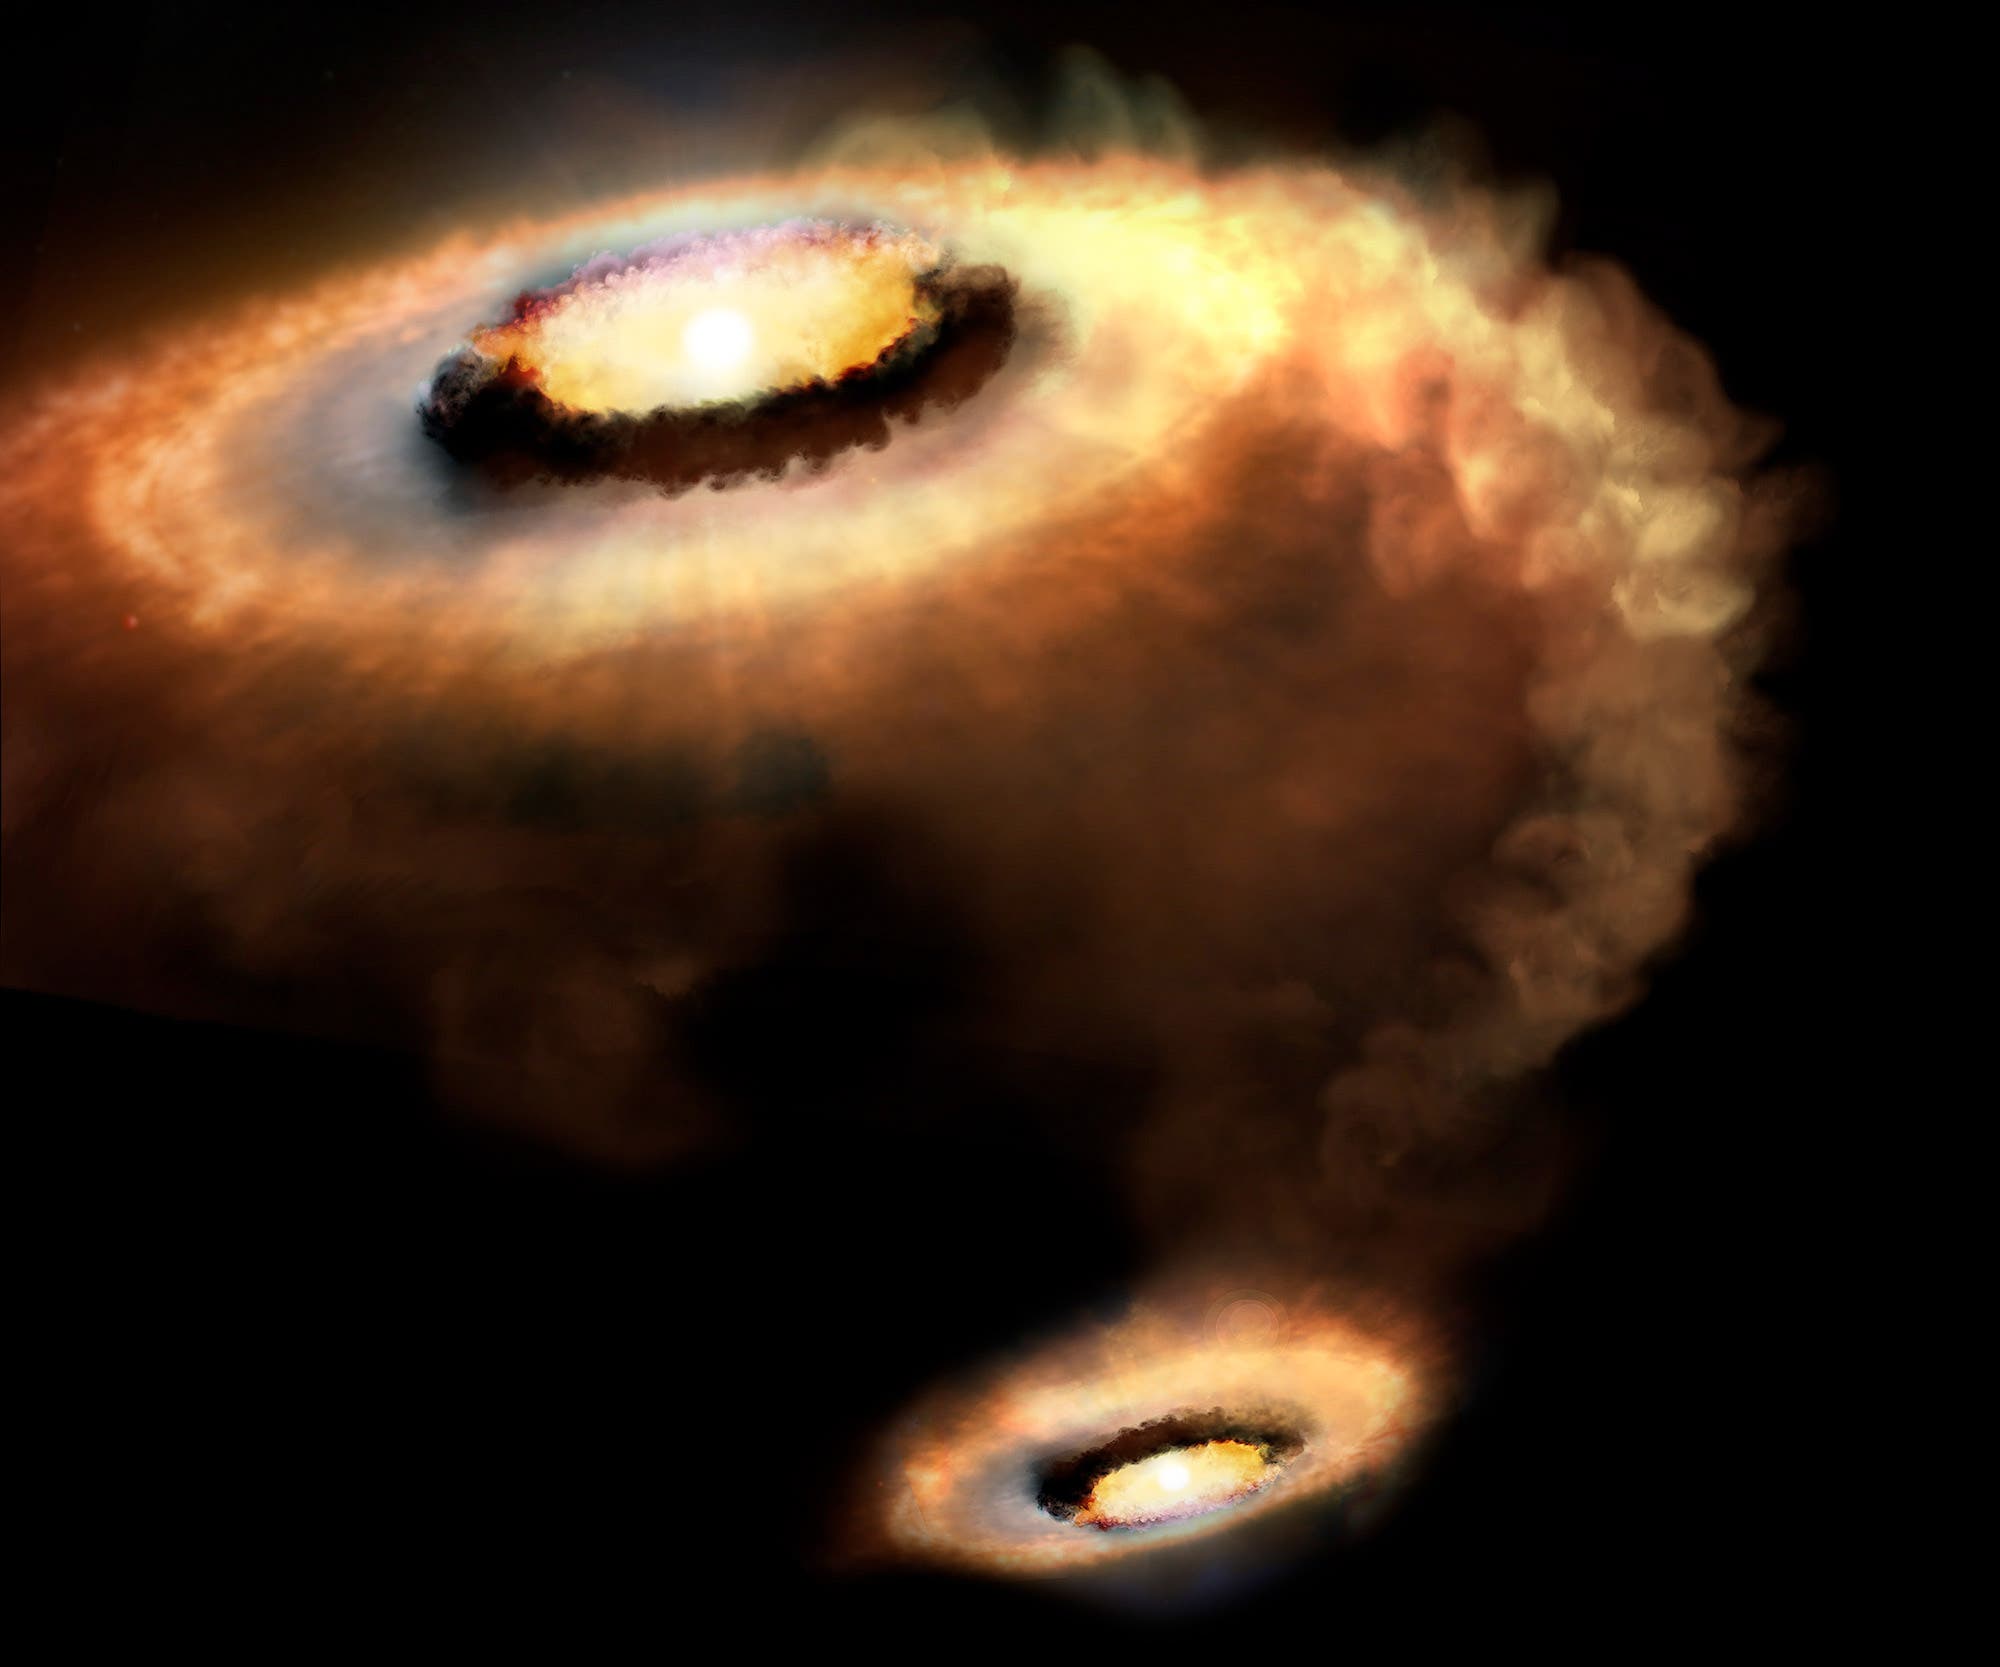 Gasströme in protoplanetaren Scheiben